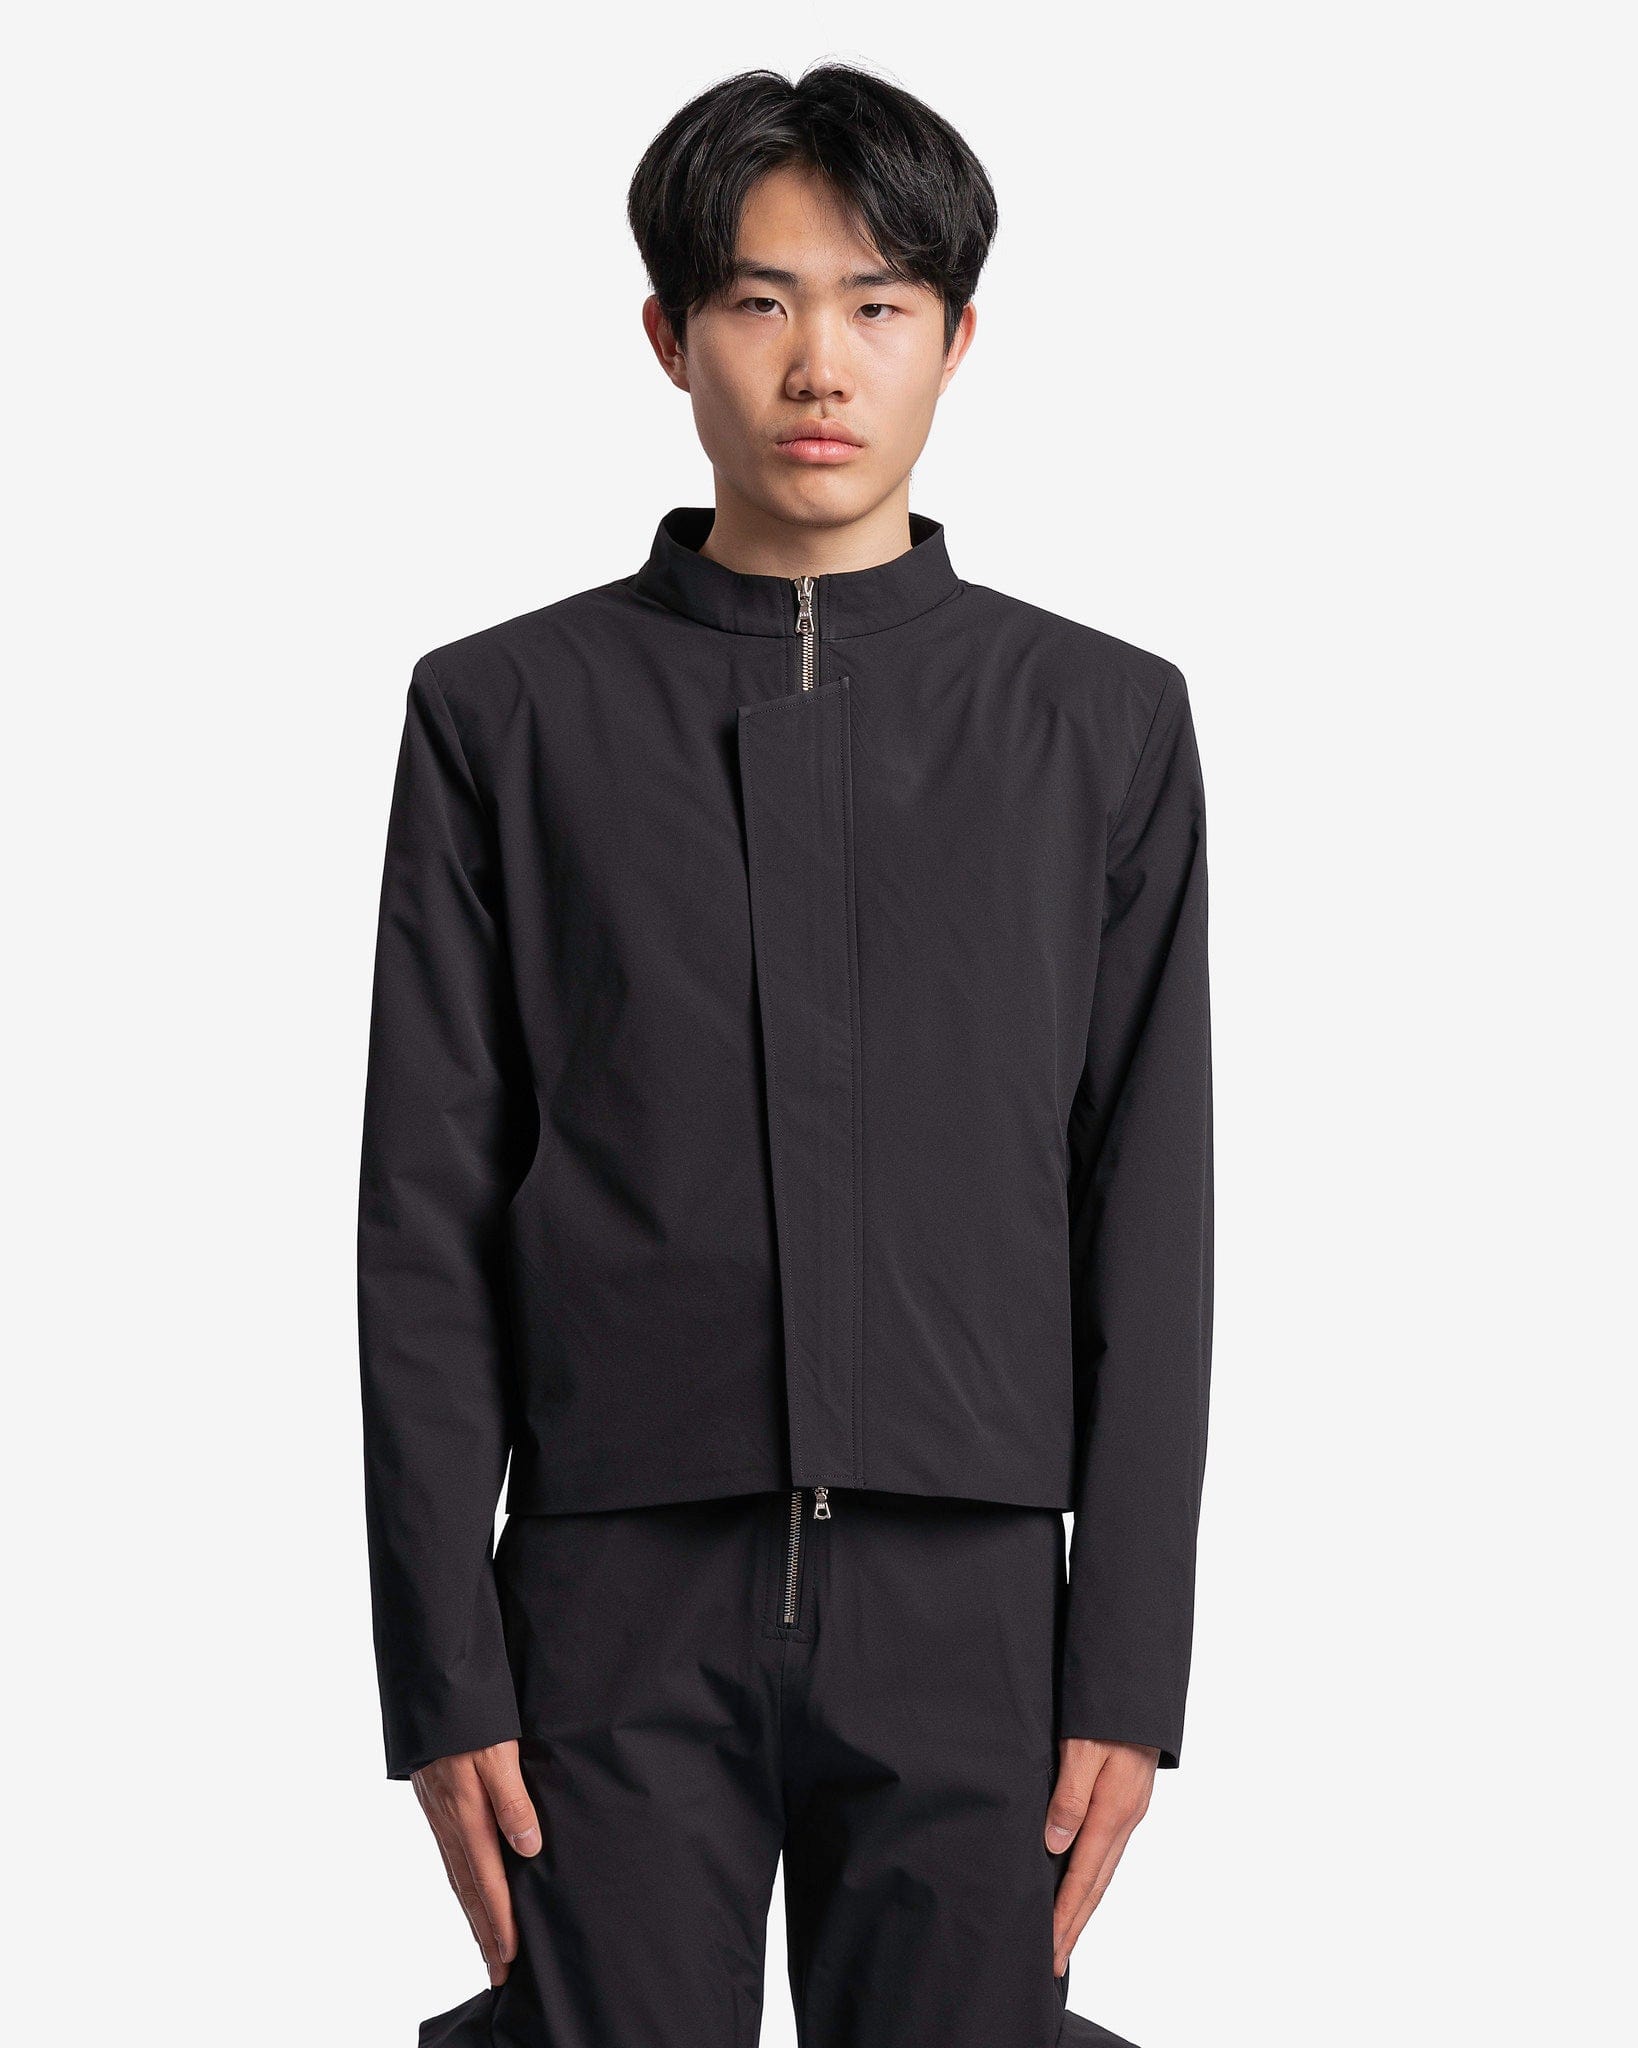 Uncertain Factor Men's Jackets Waist Cutout Casual Suit in Black